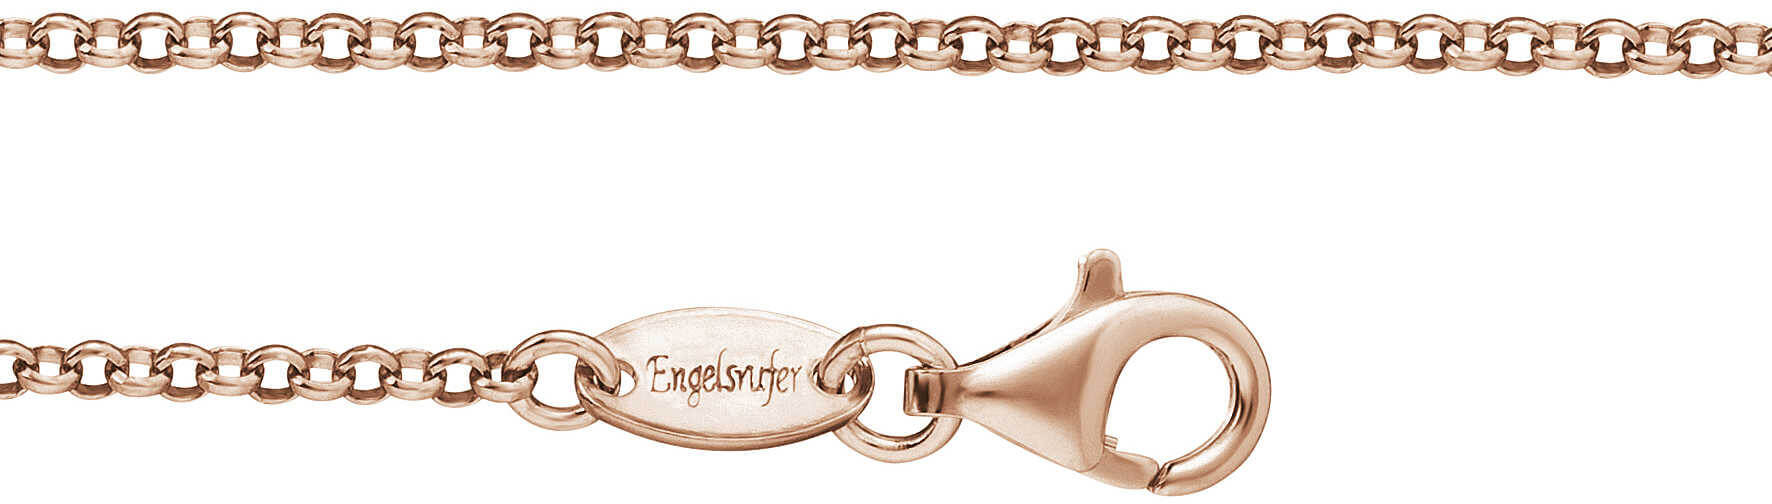 Engelsrufer Růžově zlacený stříbrný řetízek Rolo ERN-R 80 cm